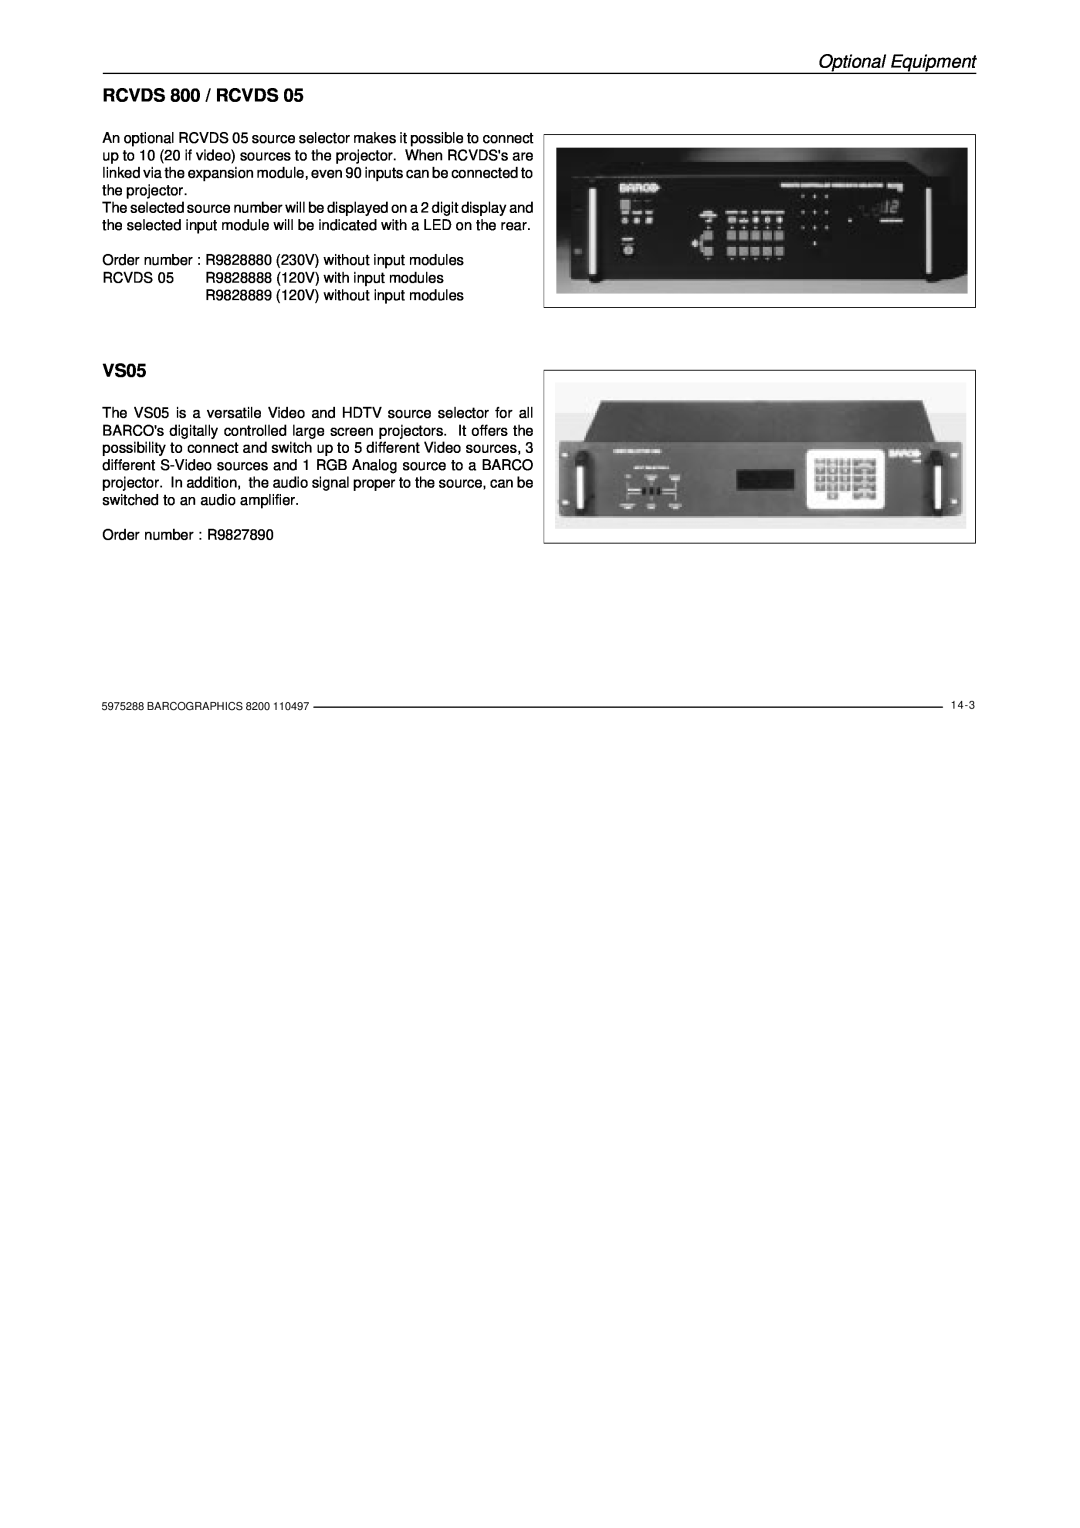 Barco R9001330 owner manual RCVDS 800 / RCVDS, VS05, Optional Equipment 